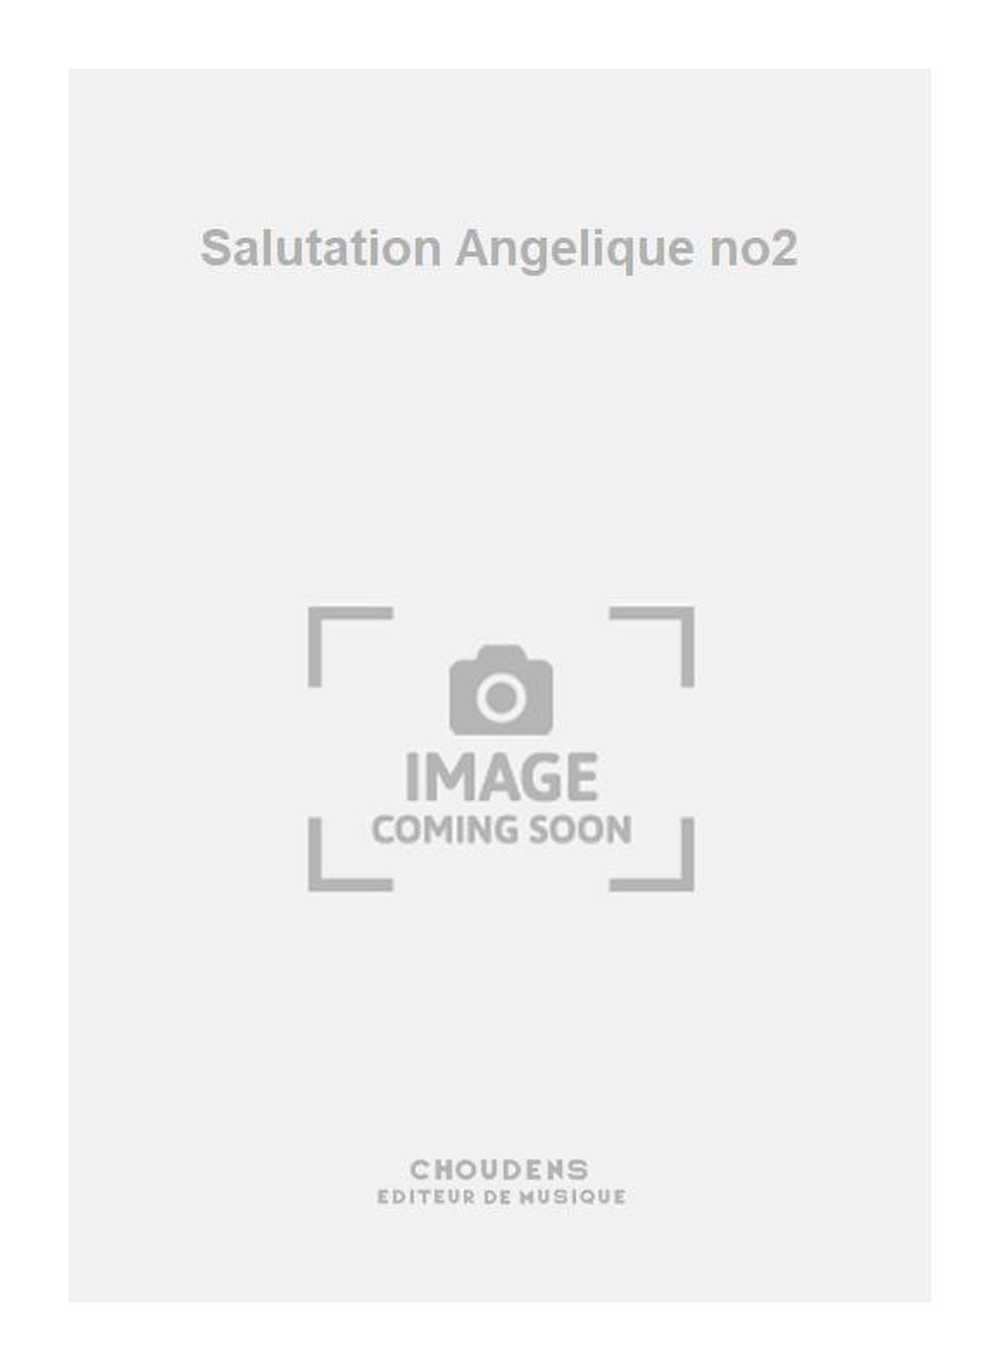 Charles Gounod: Salutation Angelique no2